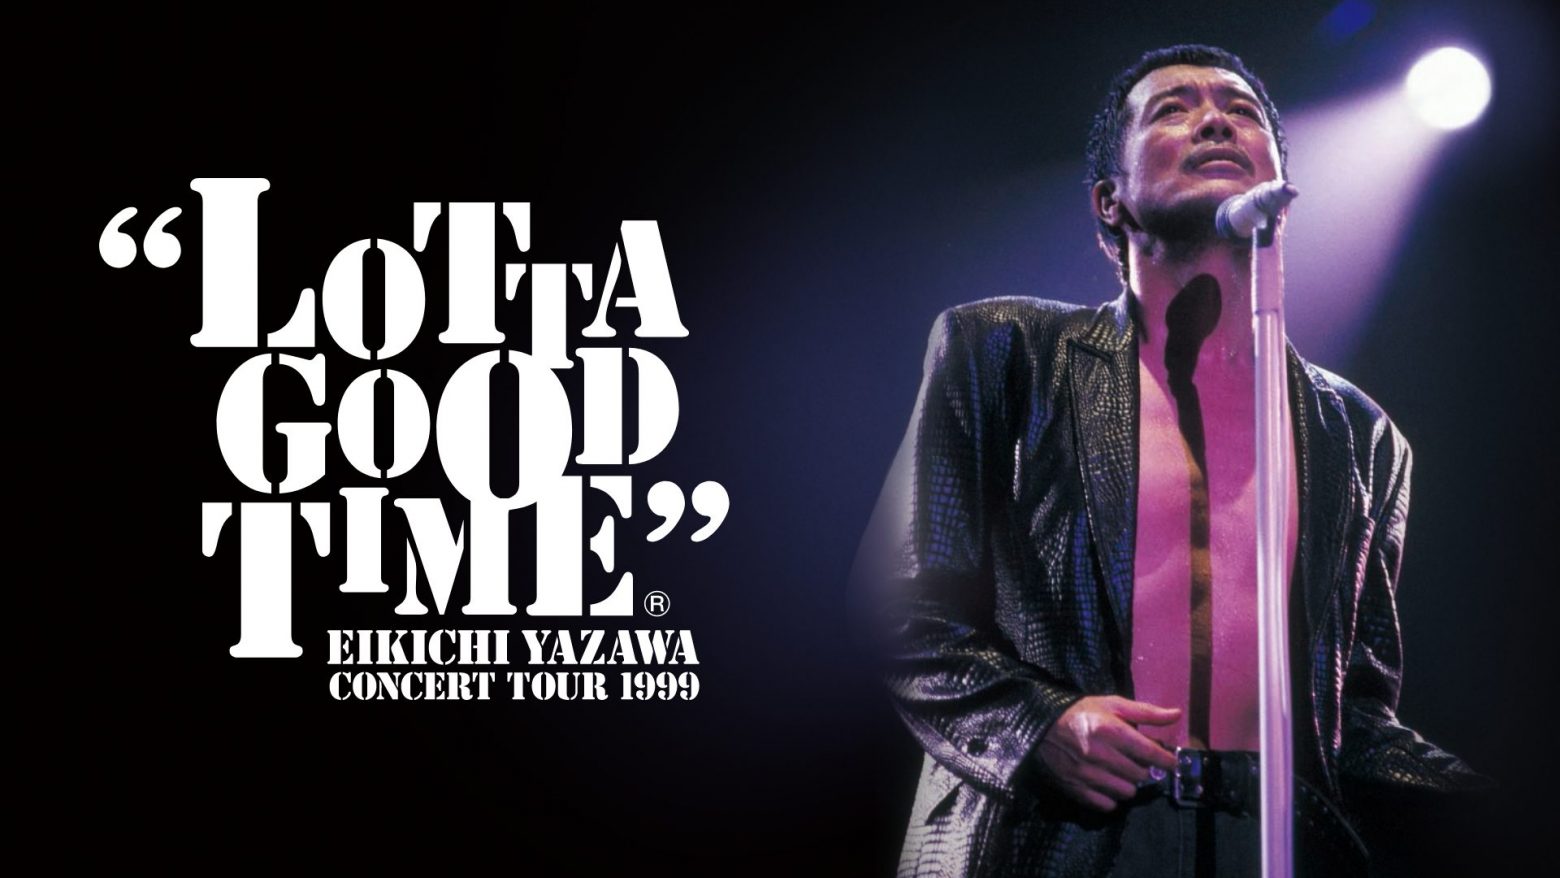 矢沢永吉、1999年に開催された「LOTTA GOOD TIME」ツアー最終日の武道館公演をU-NEXTでフル配信 | Musicman